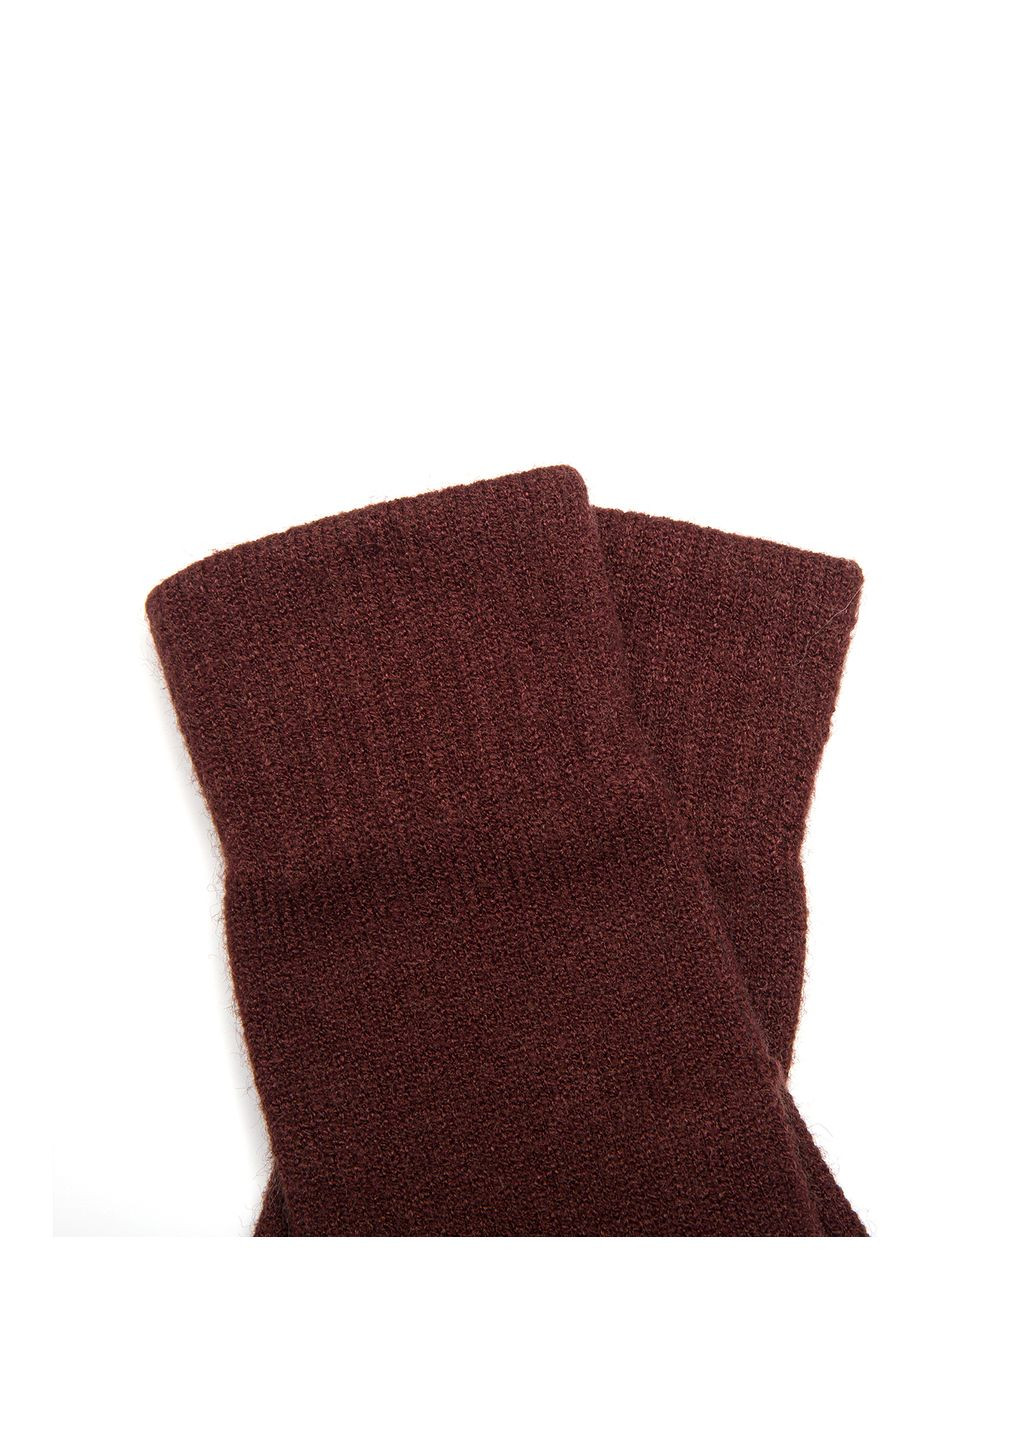 Перчатки женские шерсть с акрилом коричневые LuckyLOOK 021-815 (290278058)